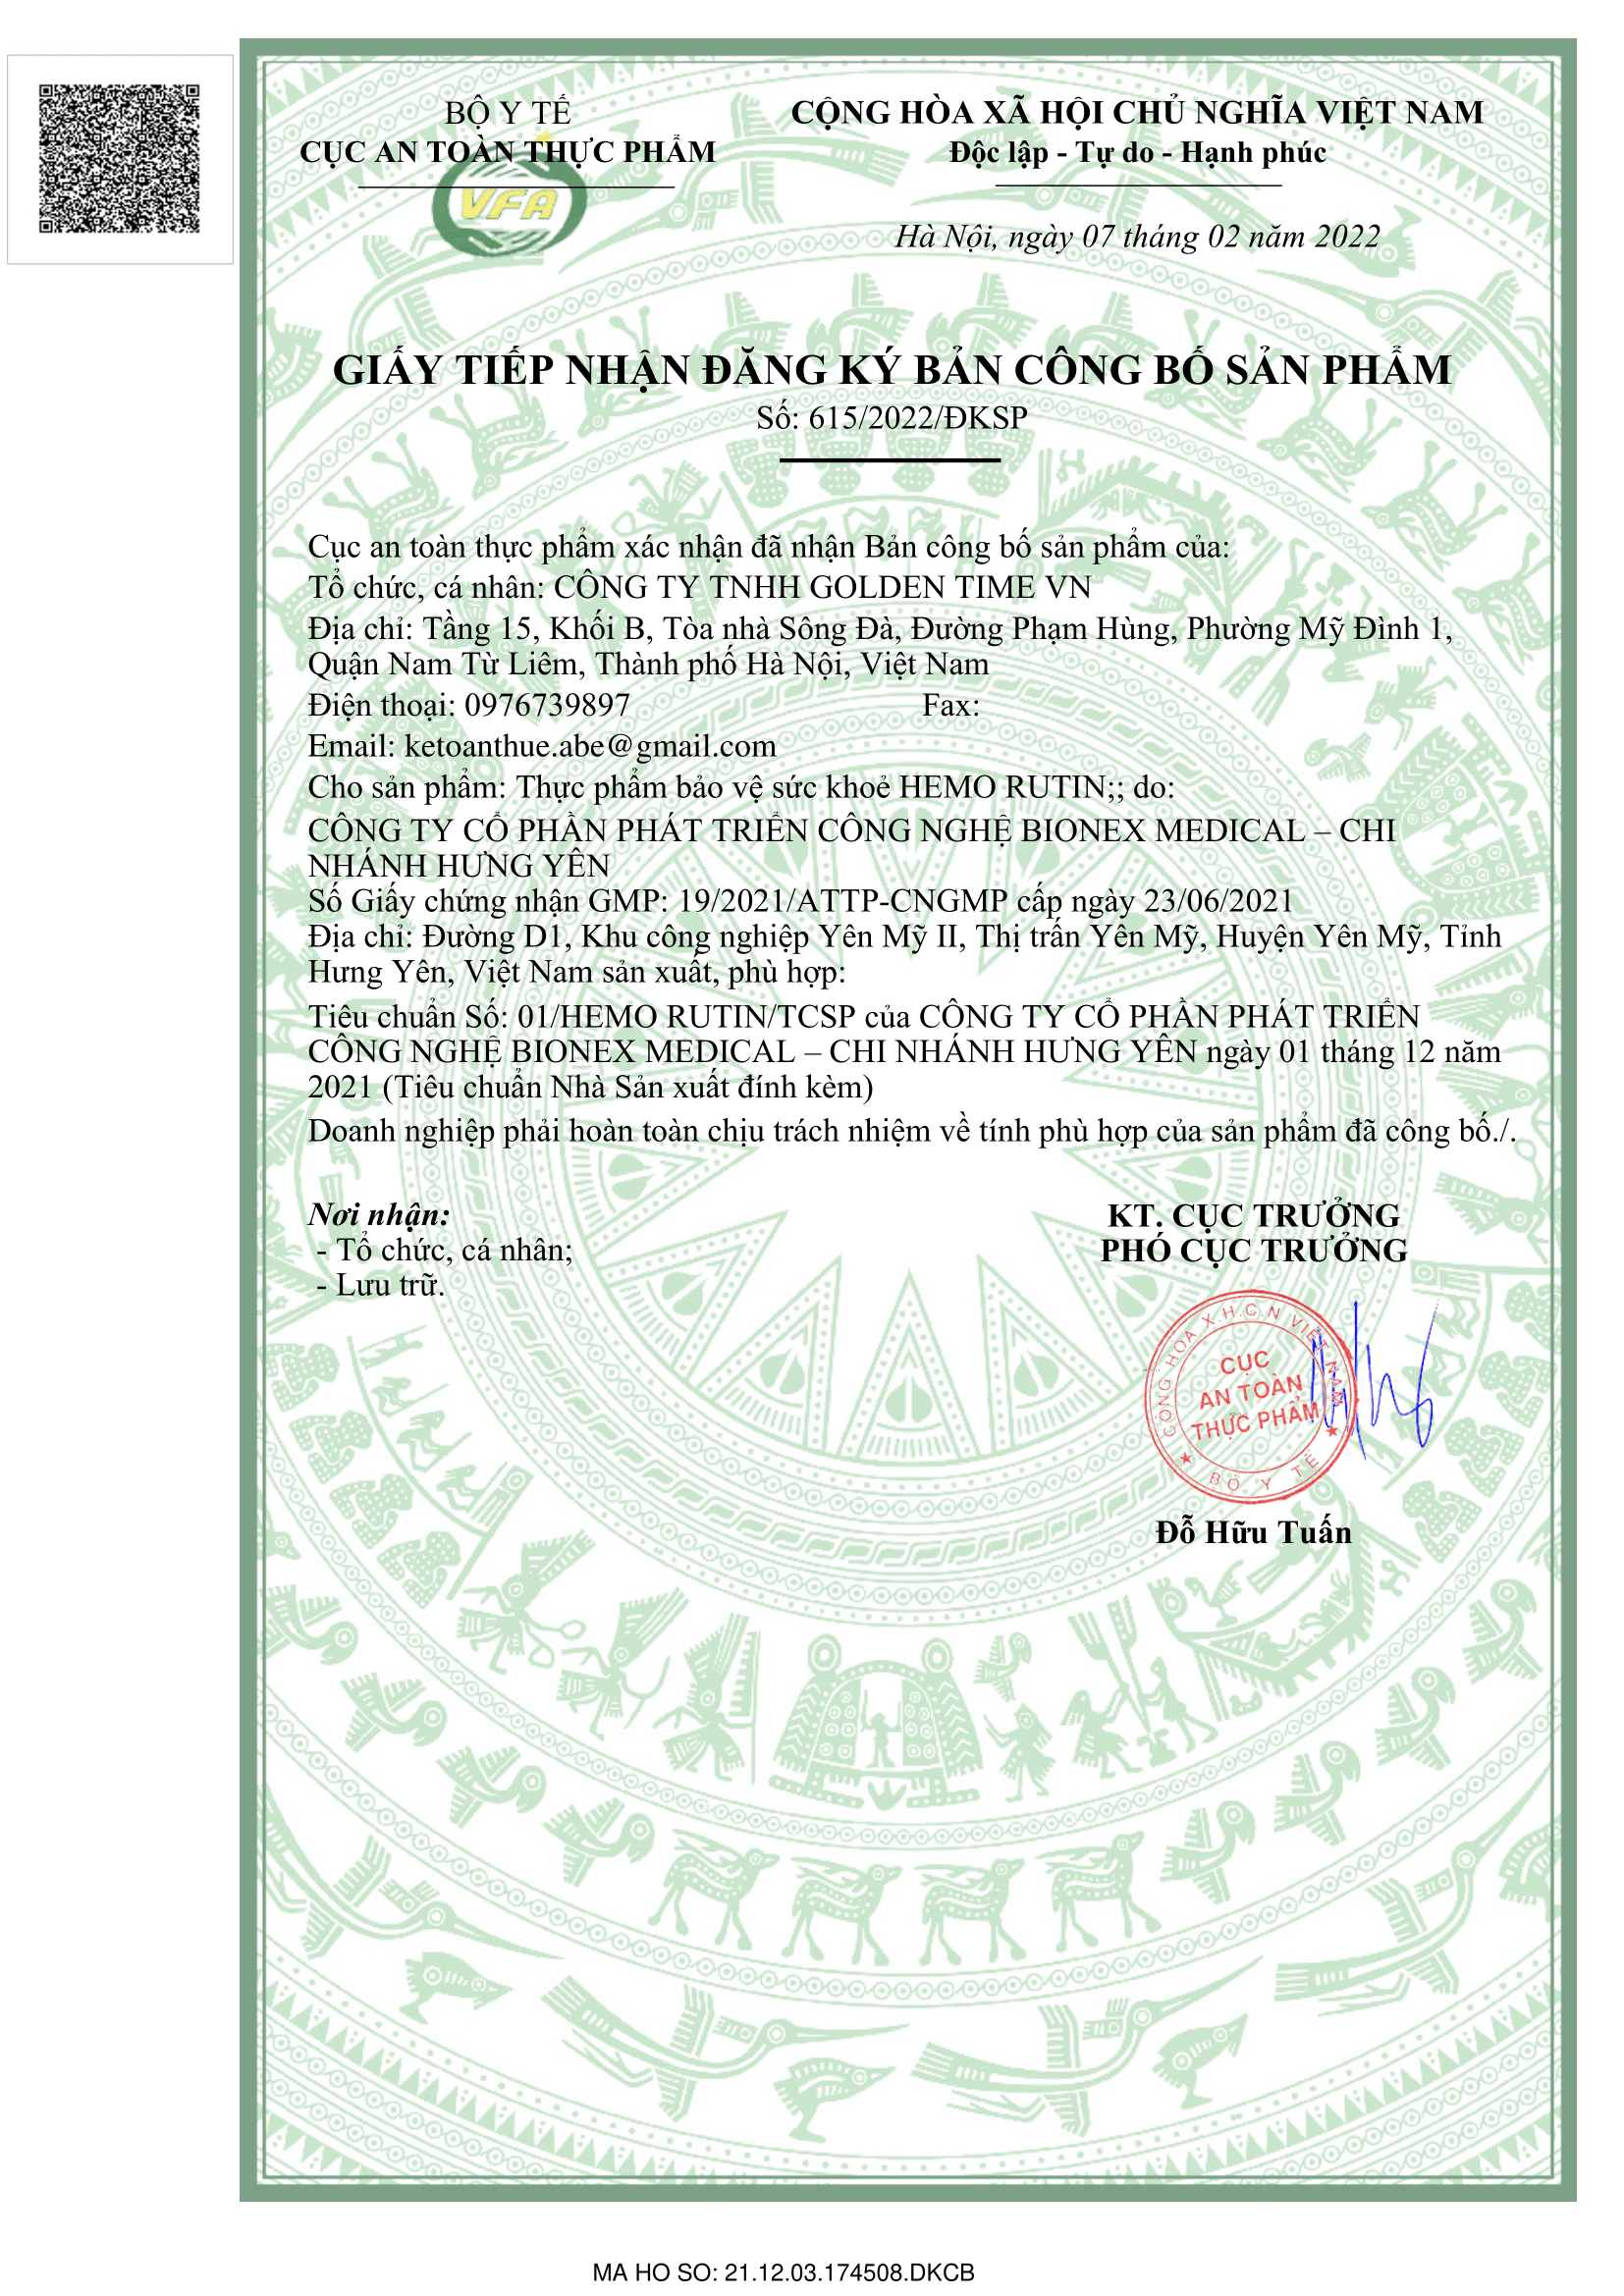 Hemo Rutin đã được cấp giấy đăng ký